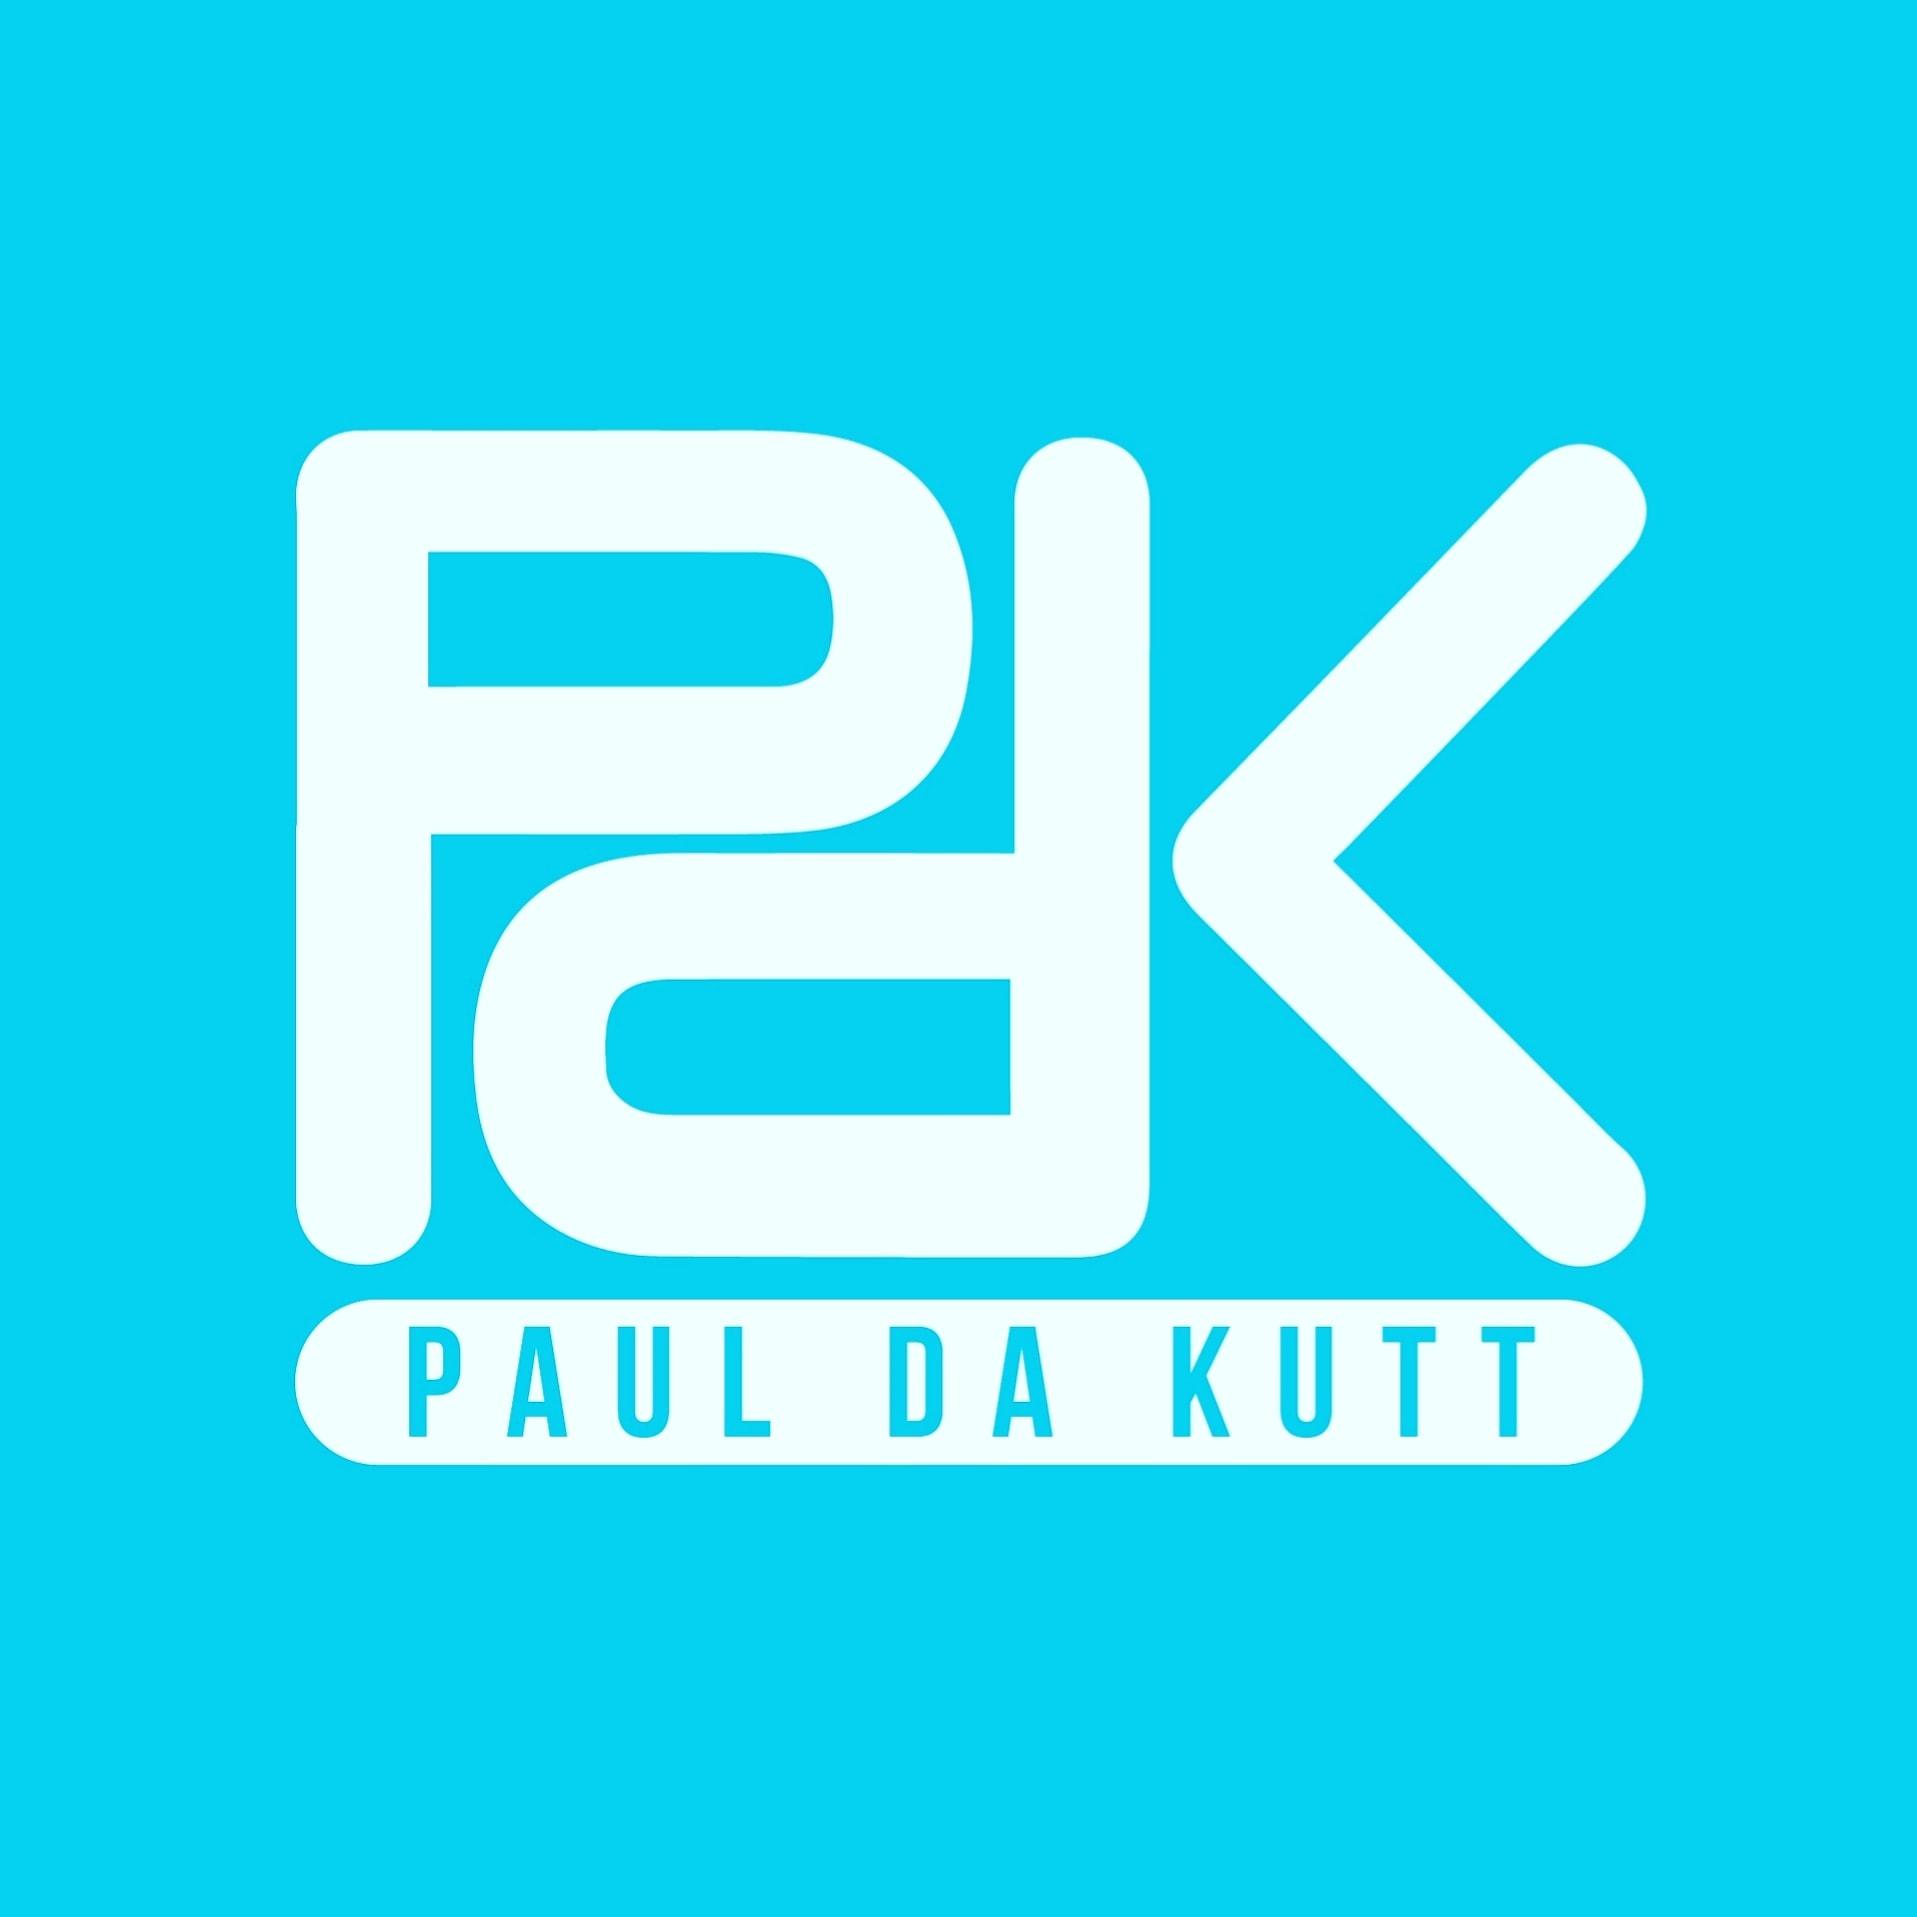 Paul Da Kutt